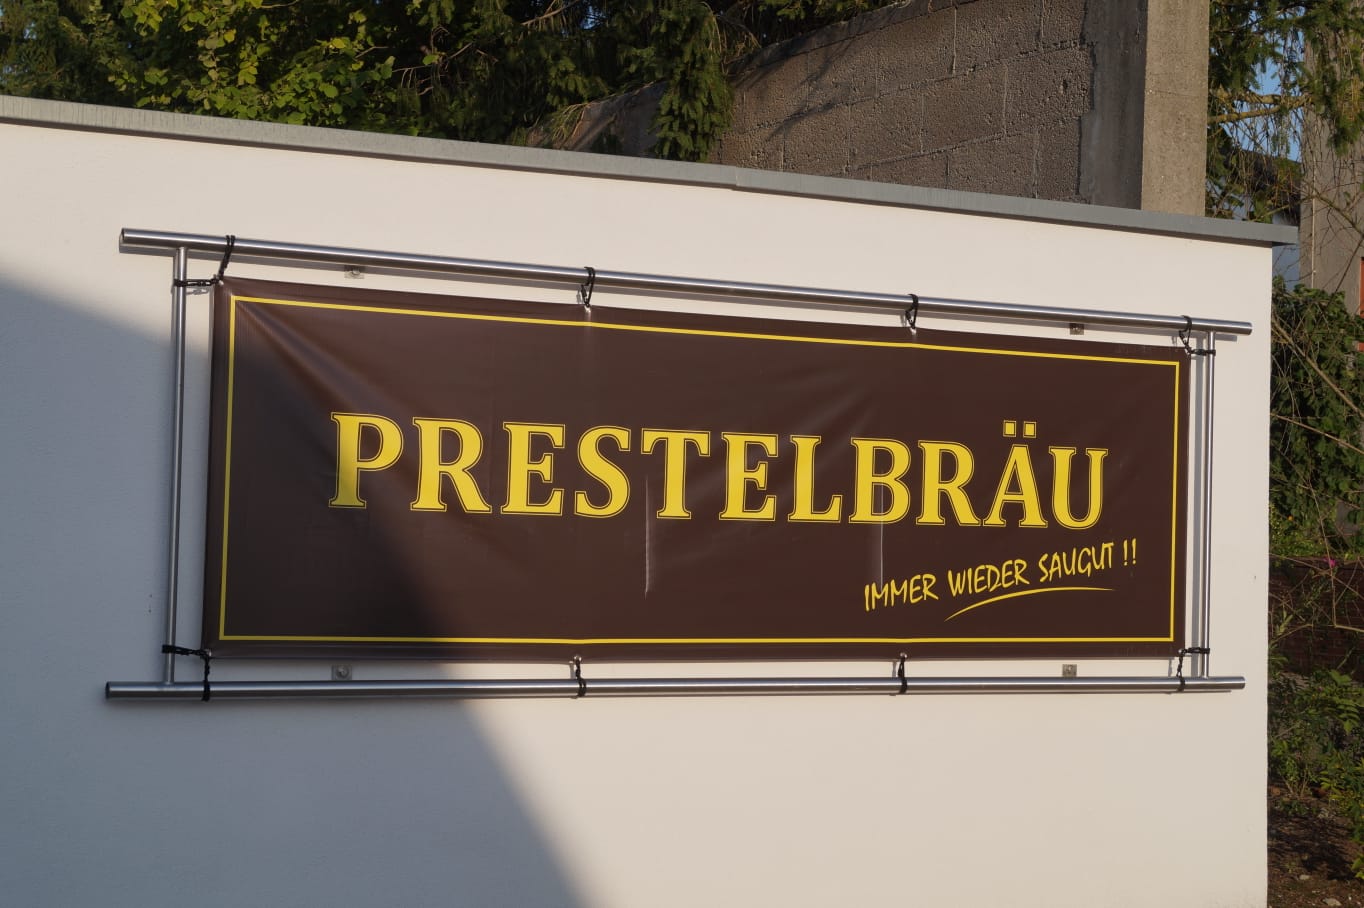 Prestelbräu